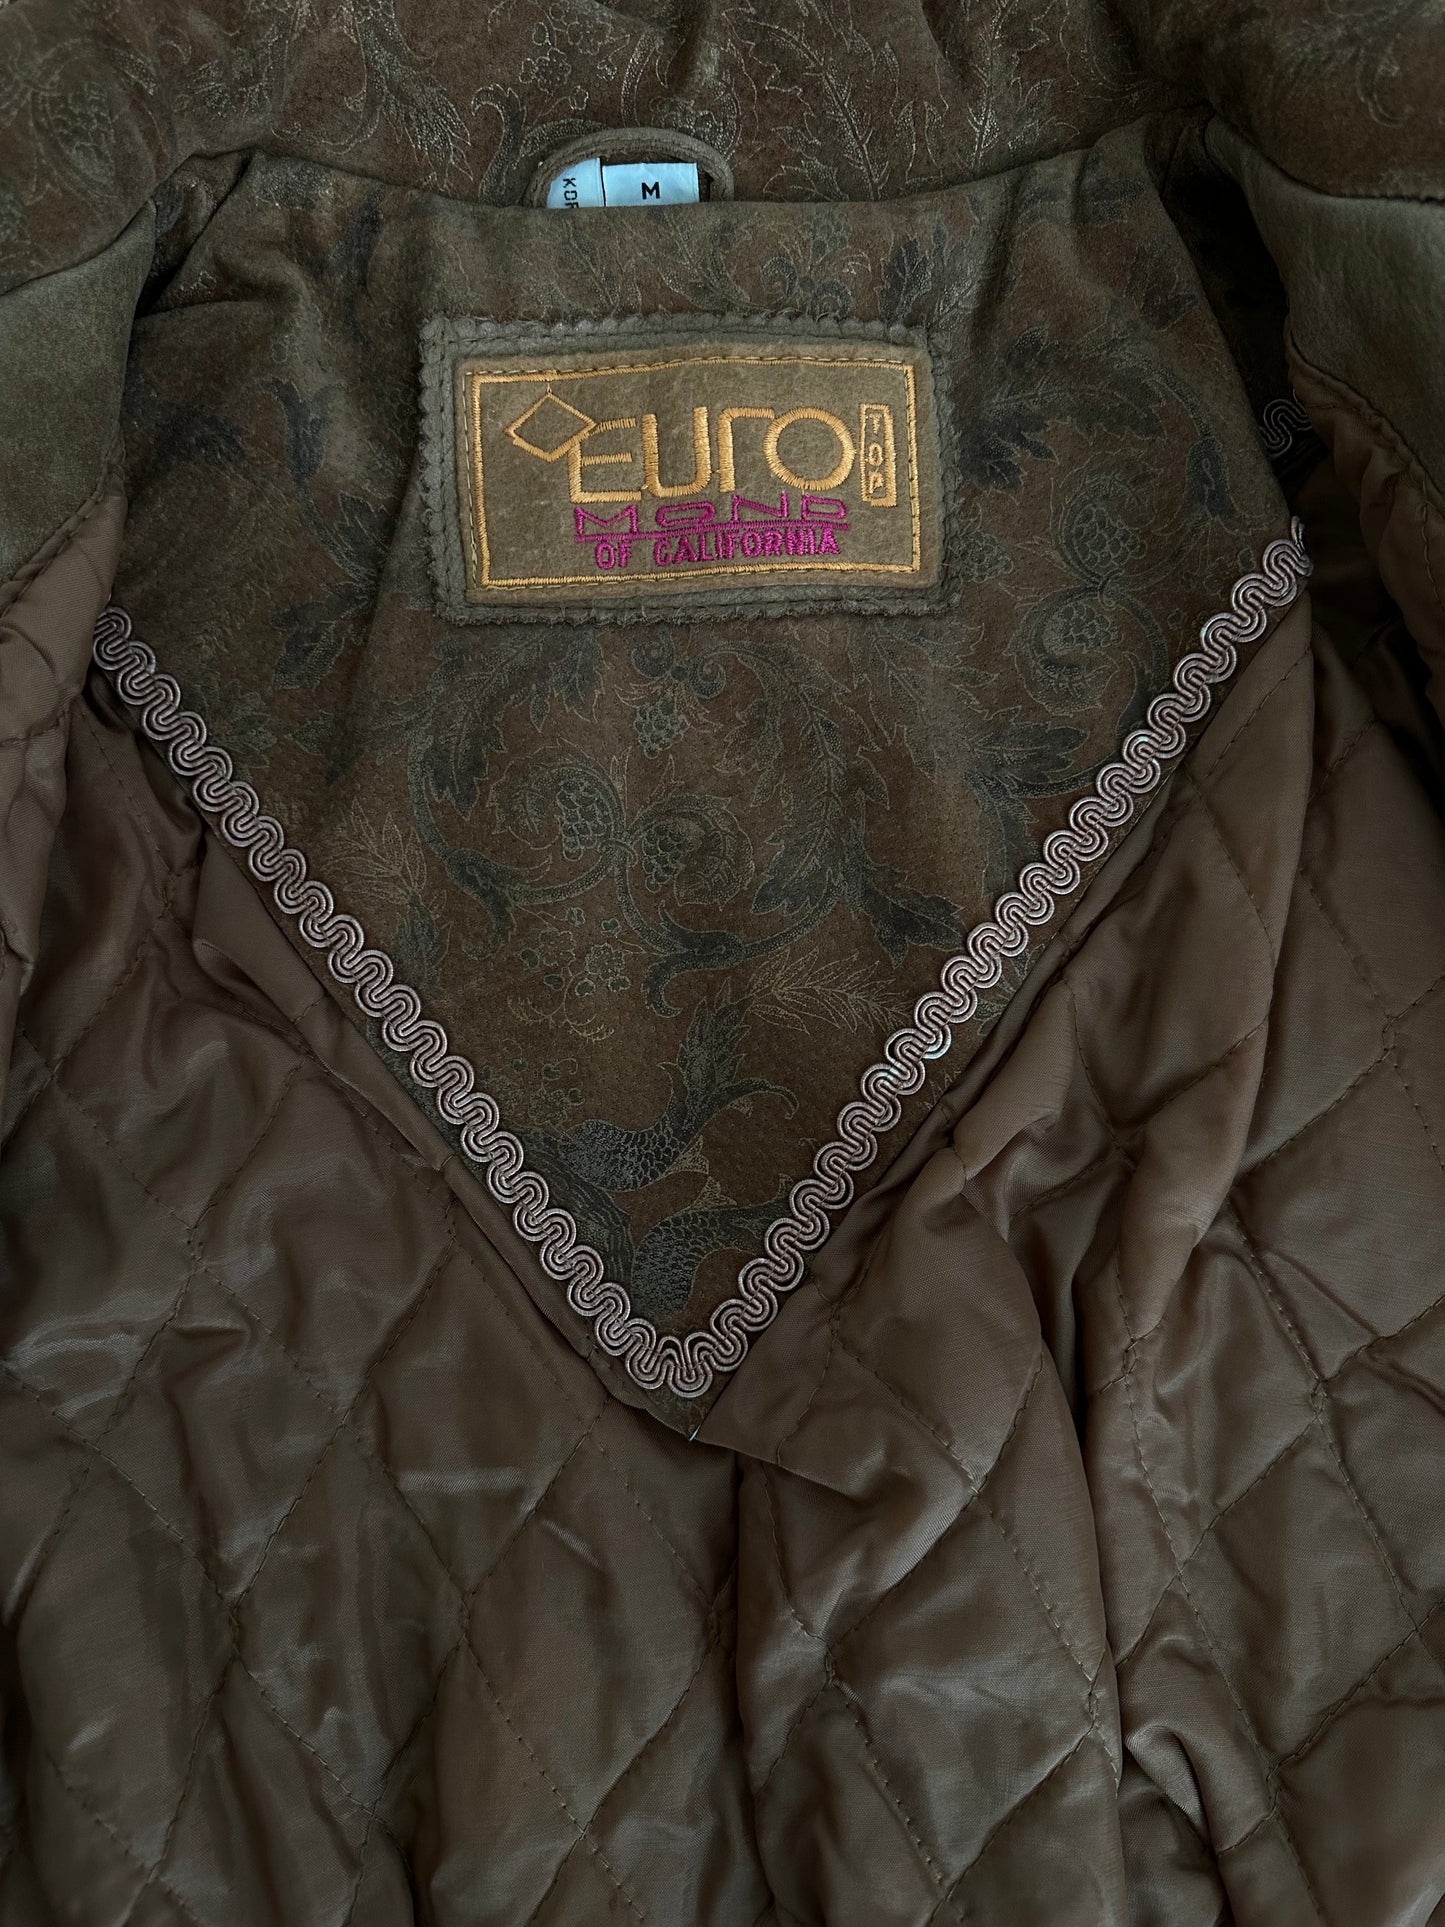 Euro Top Leather Mono of California Jacket